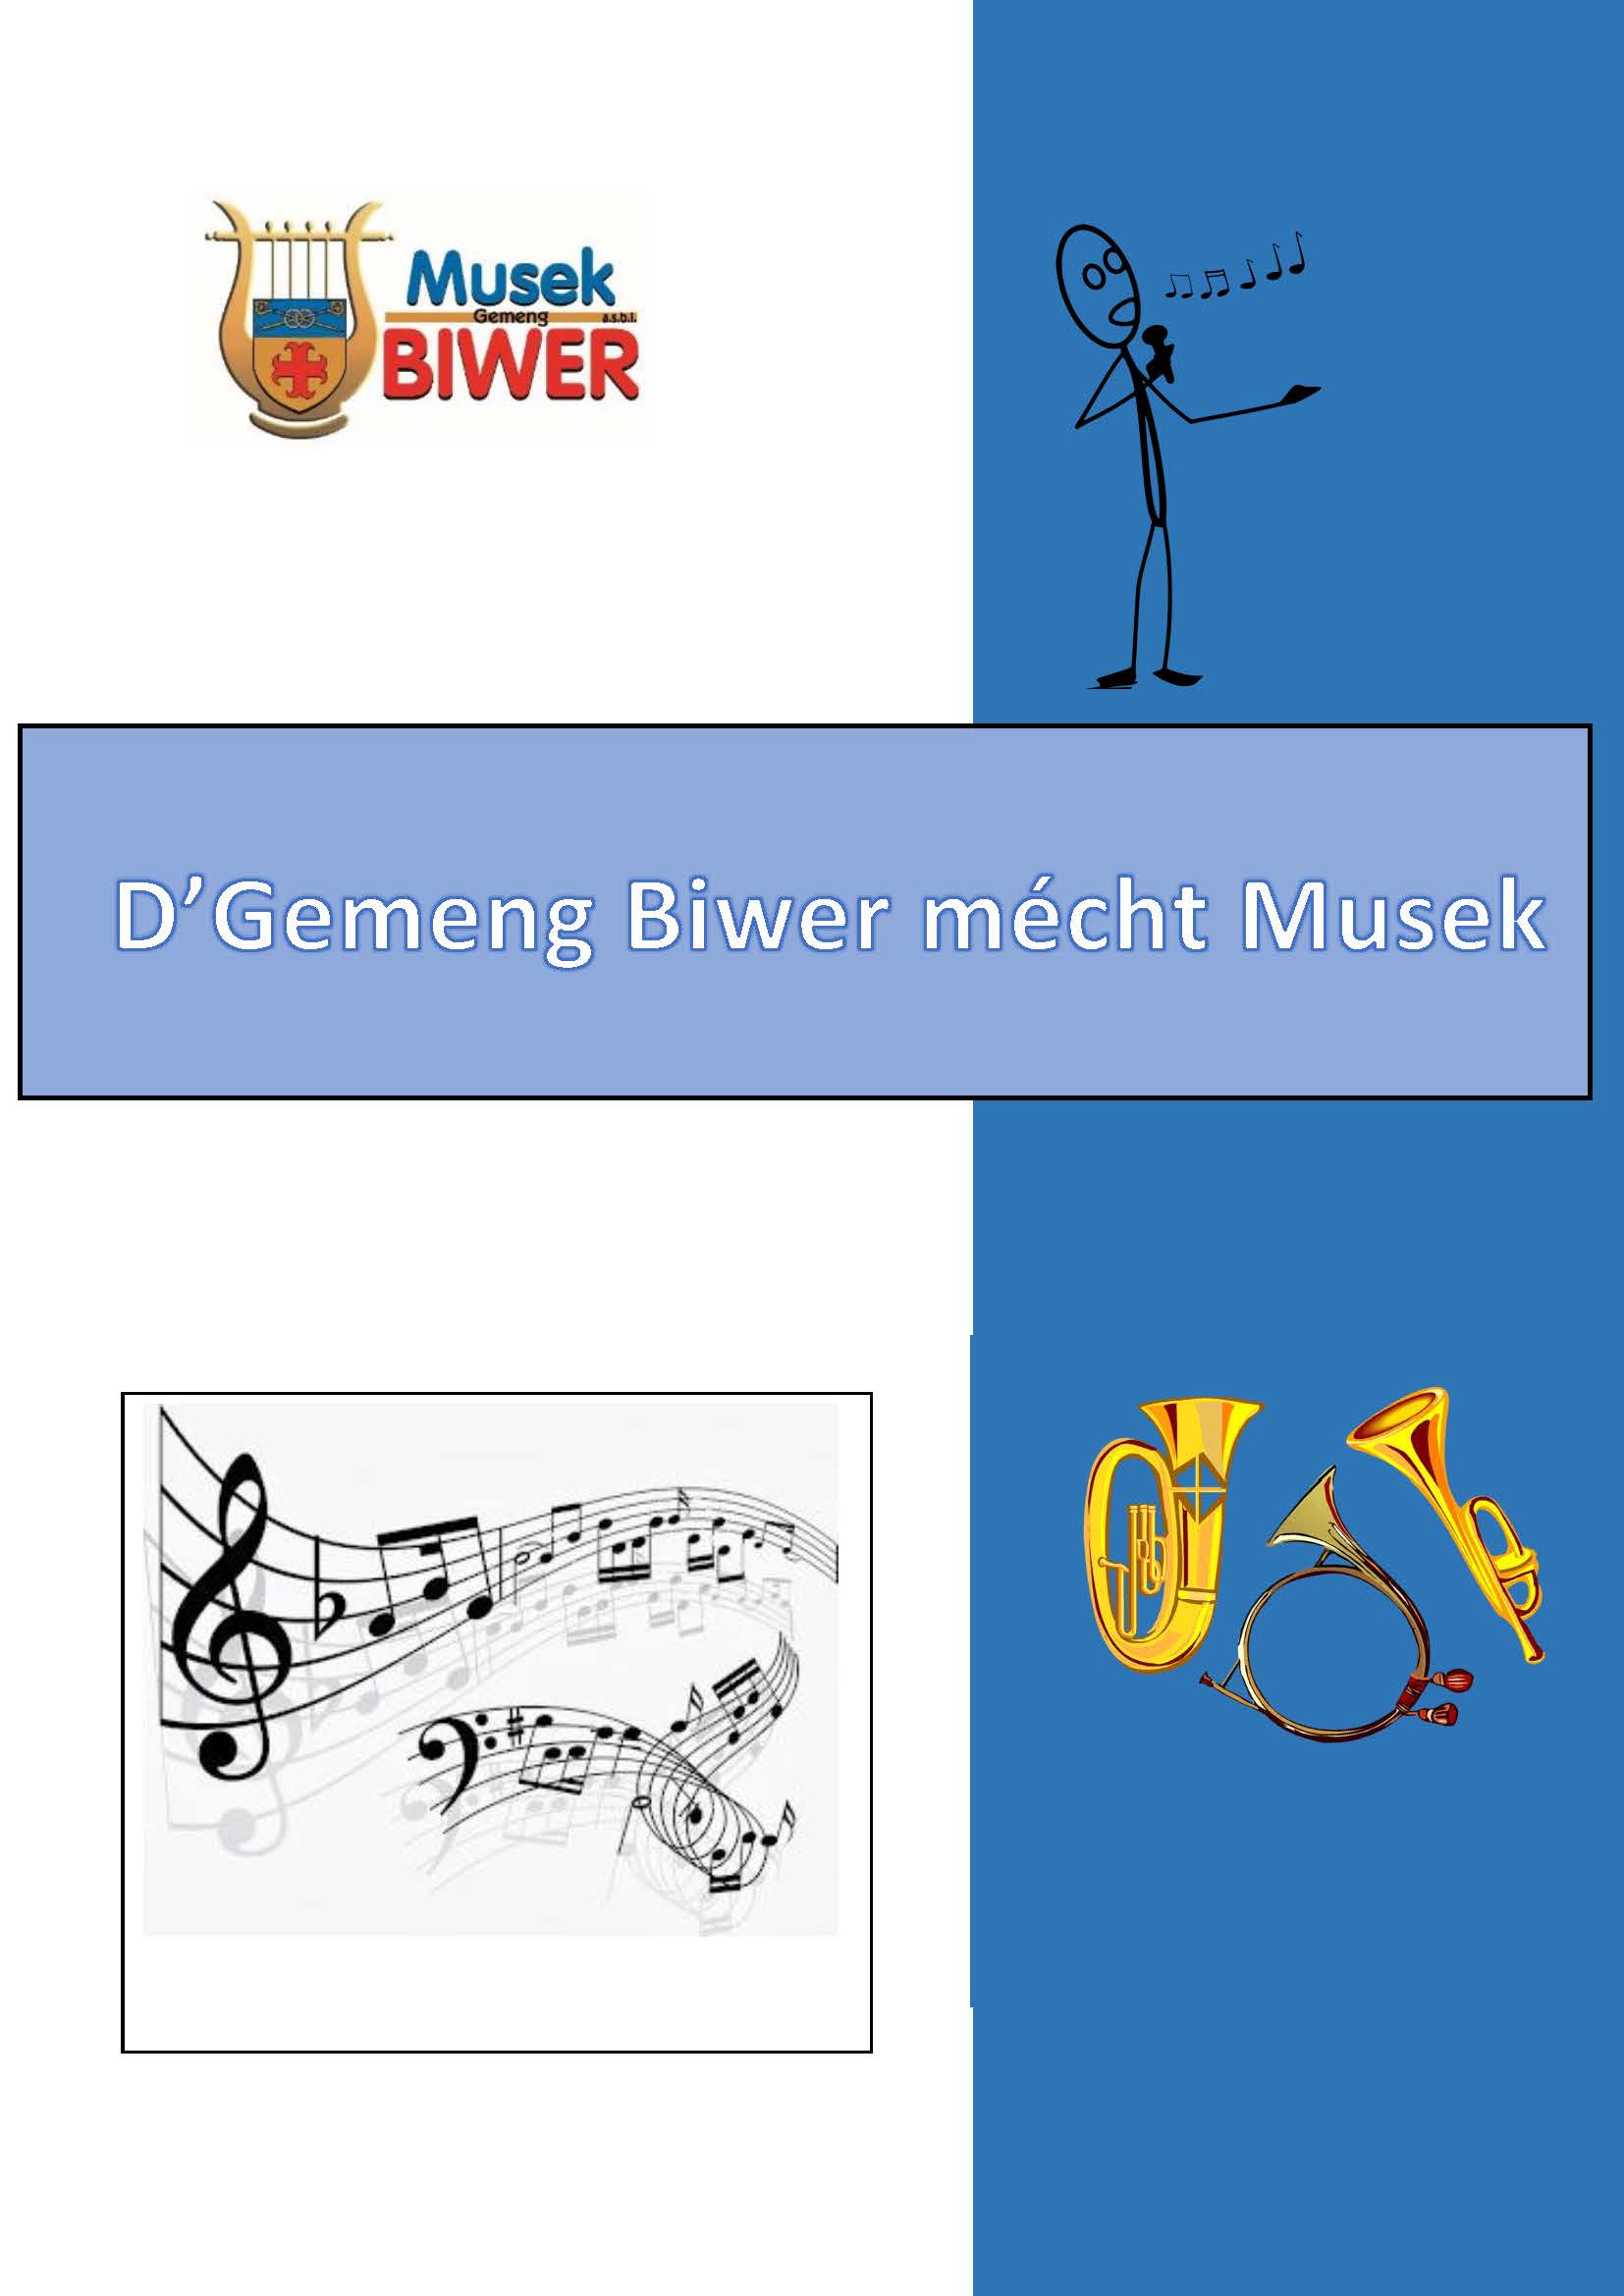 BiwerMechtMusekFlyer version 11.1.2023 Page 1